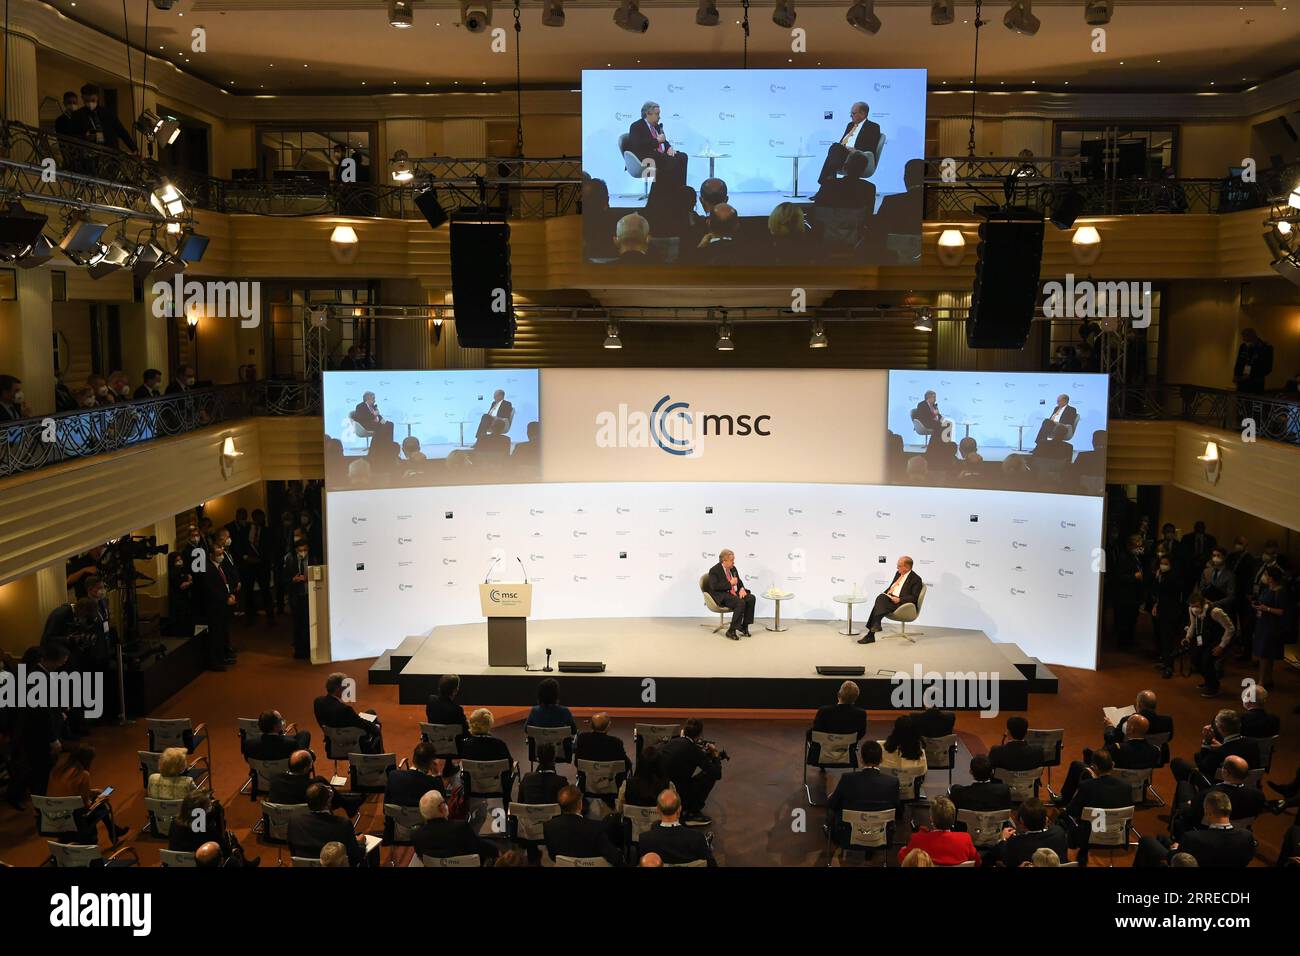 220218 -- MUNICH, le 18 février 2022 -- Wolfgang Ischinger R, président de la Conférence de Munich sur la sécurité, s'entretient avec le Secrétaire général de l'ONU Antonio Guterres lors de la 58e Conférence de Munich sur la sécurité à Munich, Allemagne, le 18 février 2022. La conférence s'est ouverte vendredi après-midi dans la ville de Munich, dans le sud de l'Allemagne, avec un thème axé sur le désapprentissage de l'impuissance. ALLEMAGNE-MUNICH-MUNICH SECURITY CONFERENCE-OUVERTURE LUXYANG PUBLICATIONXNOTXINXCHN Banque D'Images